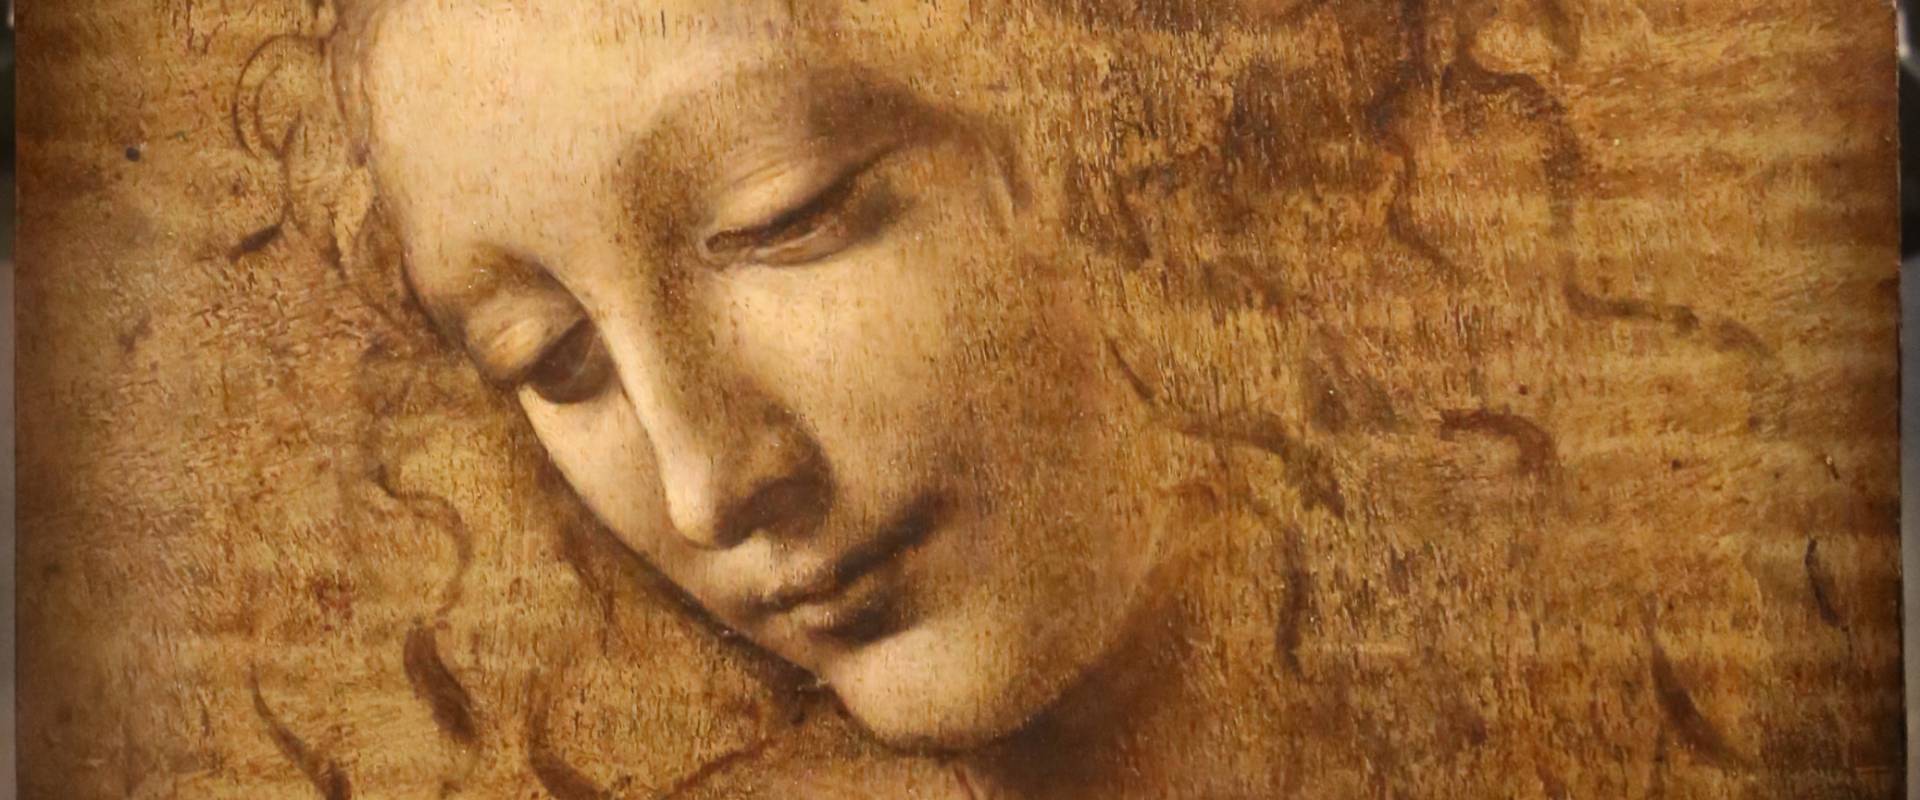 Leonardo da vinci, testa di fanciulla detta la scapigliata, 1500-10 ca., disegno su tavola, 01 foto di Sailko